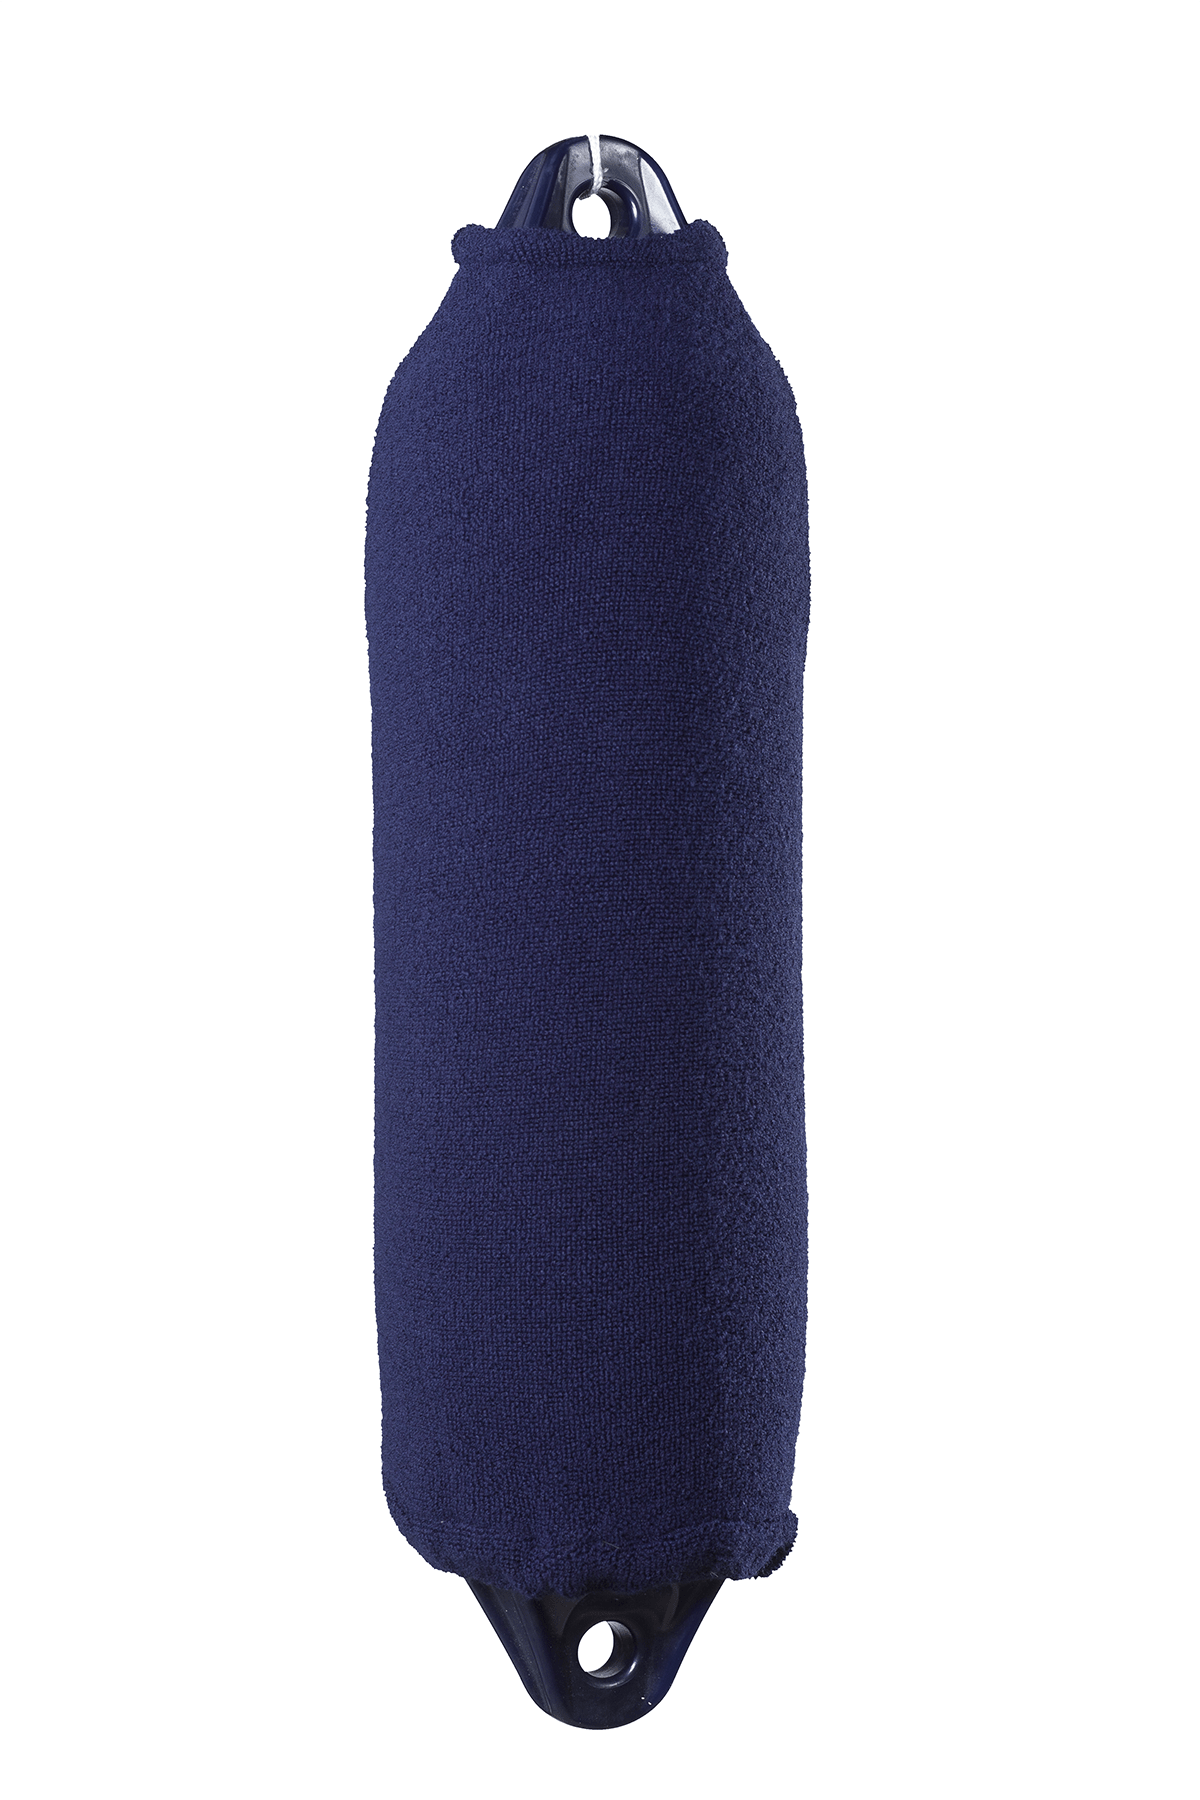 76.91 - Καλύμματα Μακρόστενων Μπαλονιών 104cm Χρώματος Μπλε - Σετ Των 2 Τεμαχίων